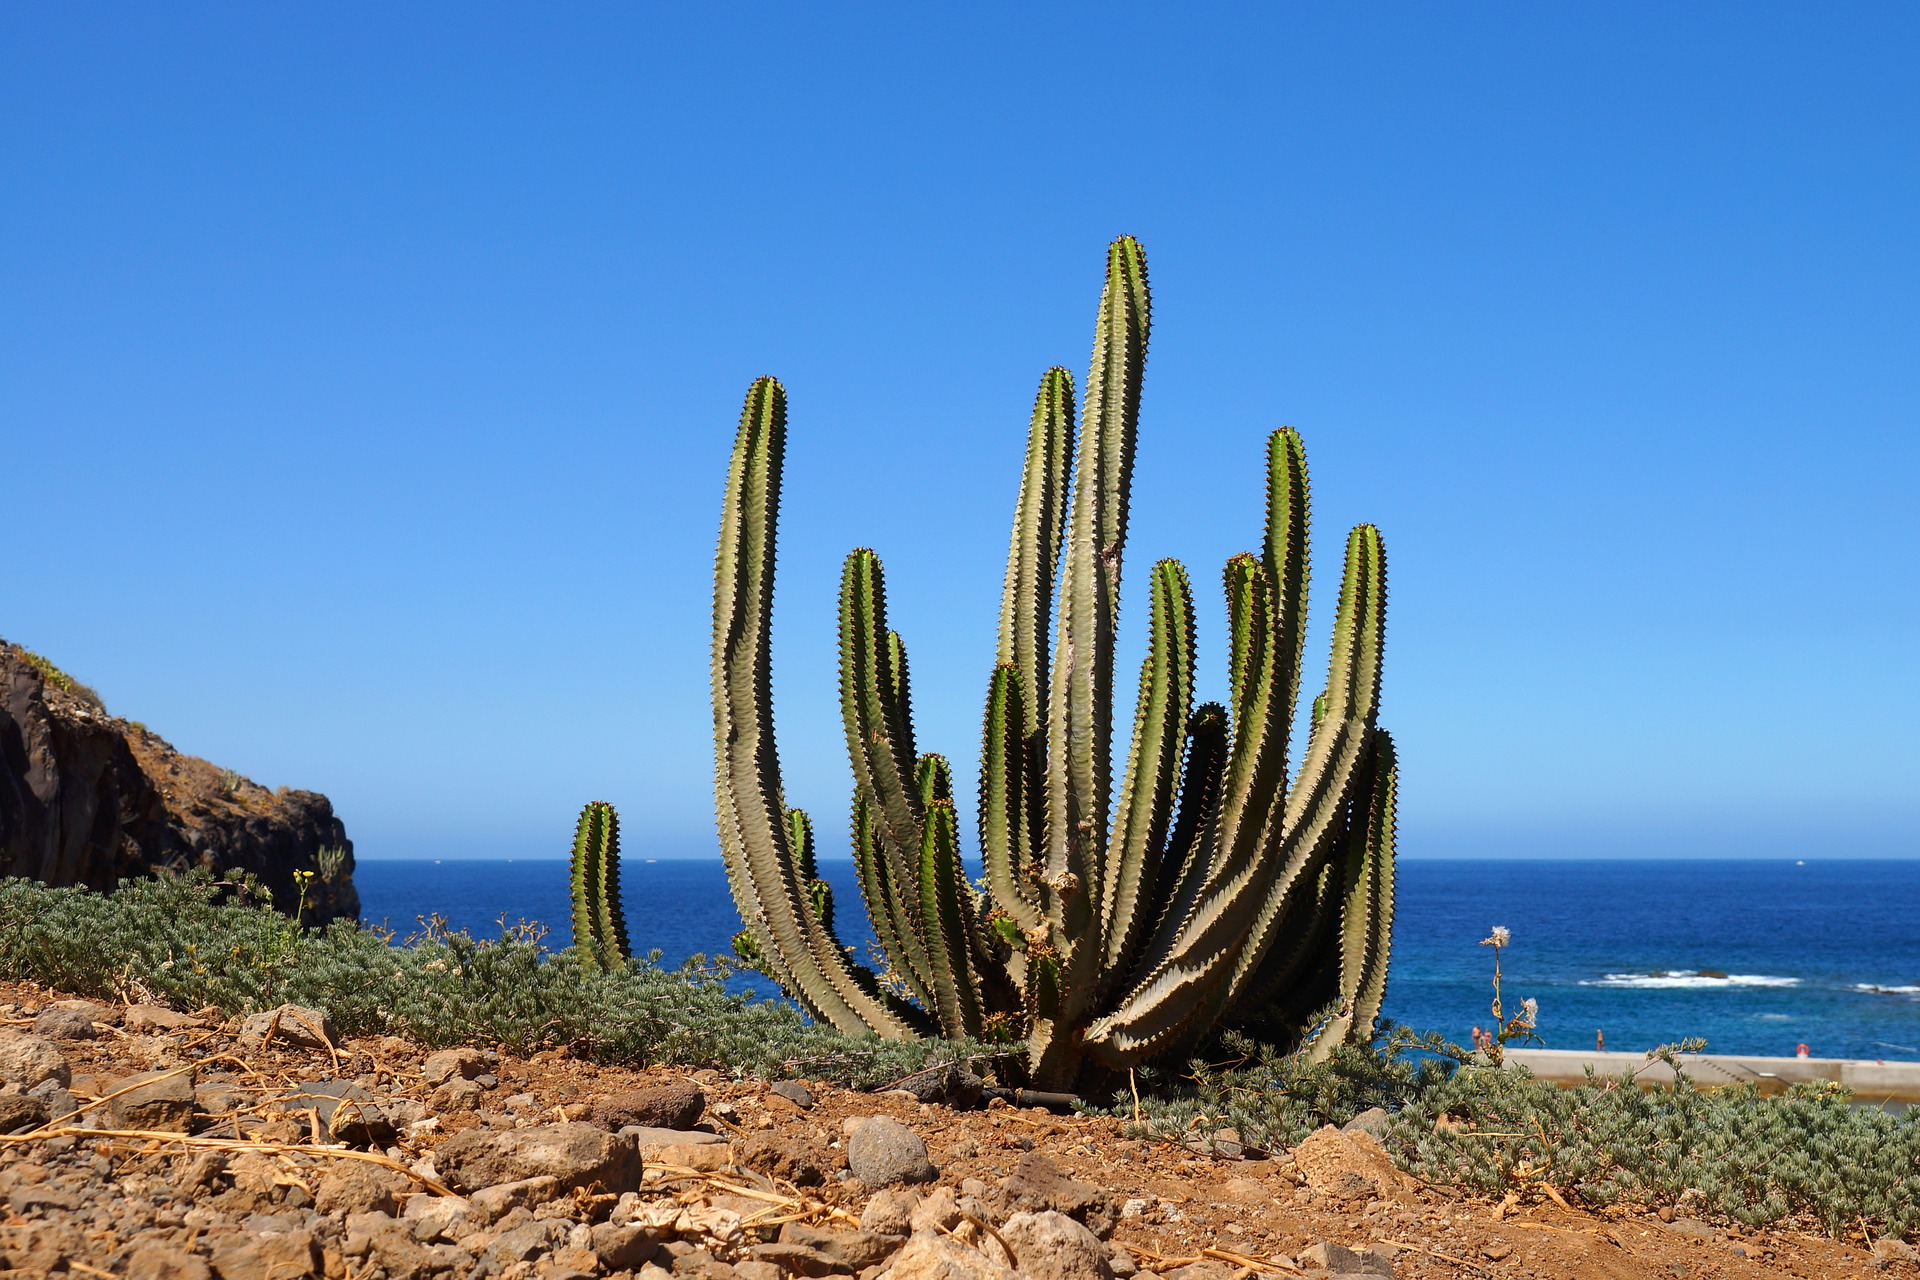 Tenerife busca fortalecer la conectividad con destinos europeos